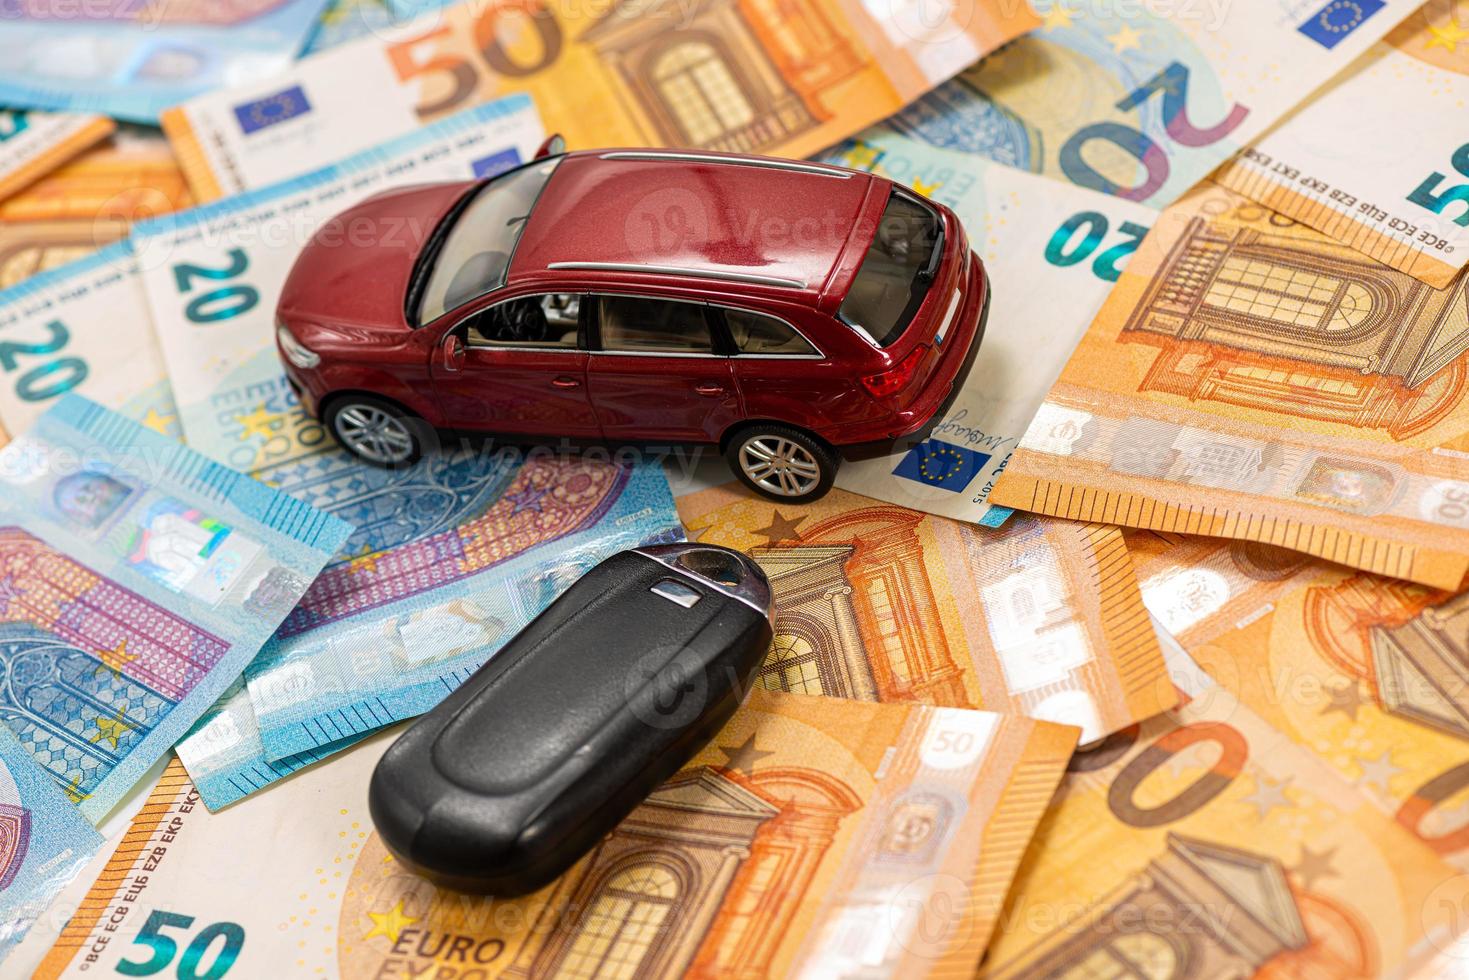 sleutel en rode speelgoedauto op stapel eurobankbiljetten foto